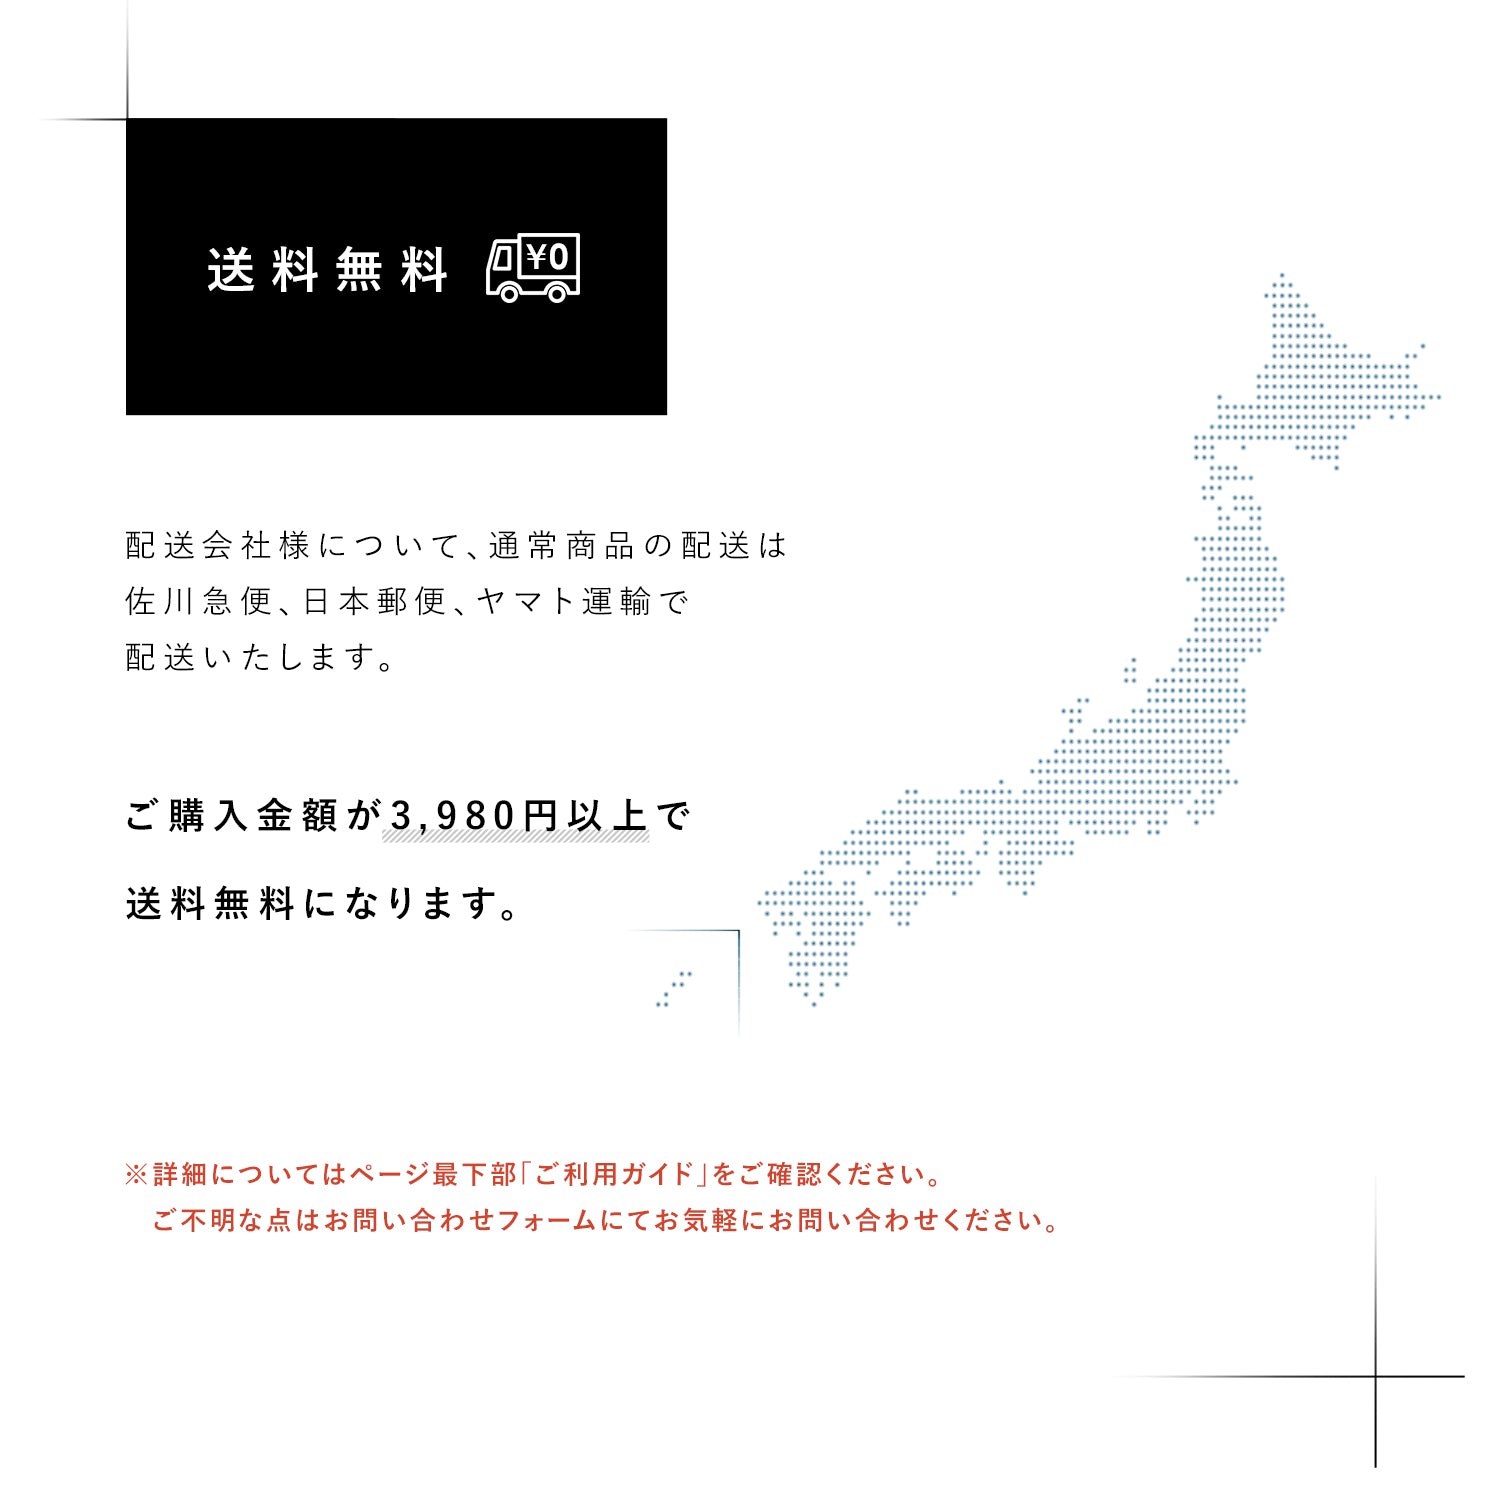 MAWAハンガー (マワハンガー) 【3100】レディースライン ワイド  20本セット エコノミック46P メンズ [正規品]